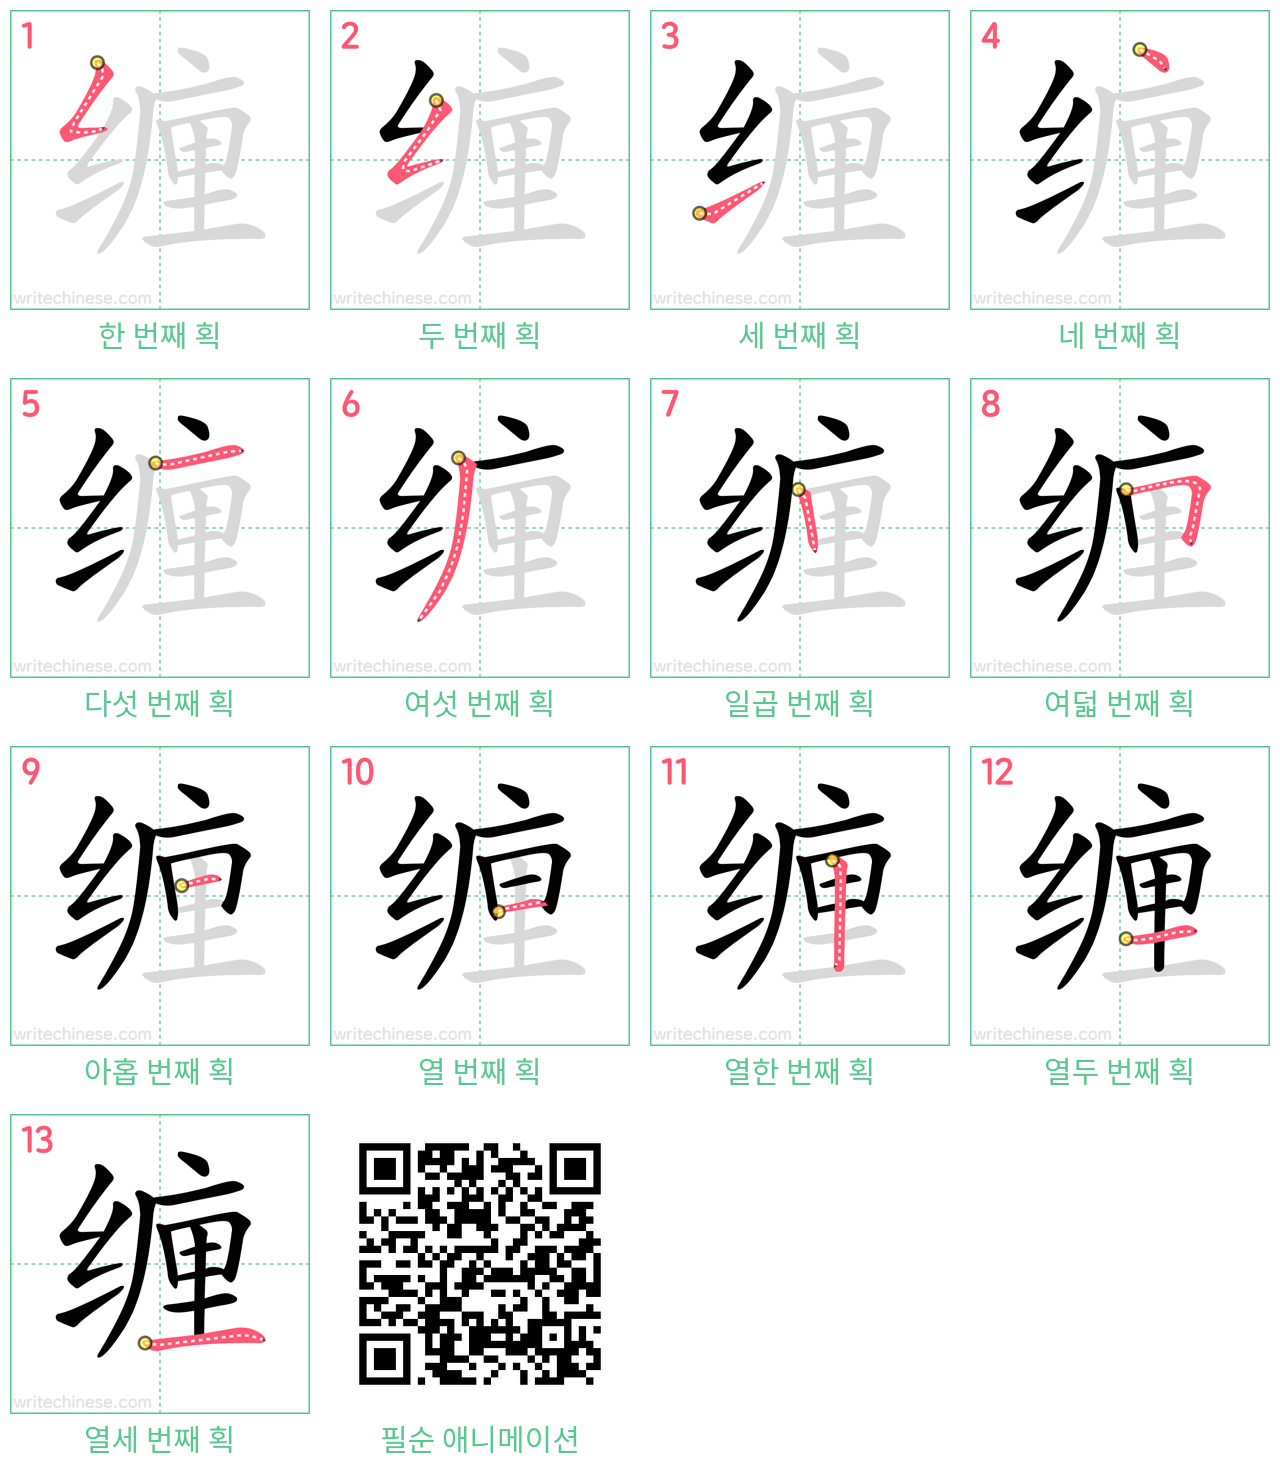 缠 step-by-step stroke order diagrams